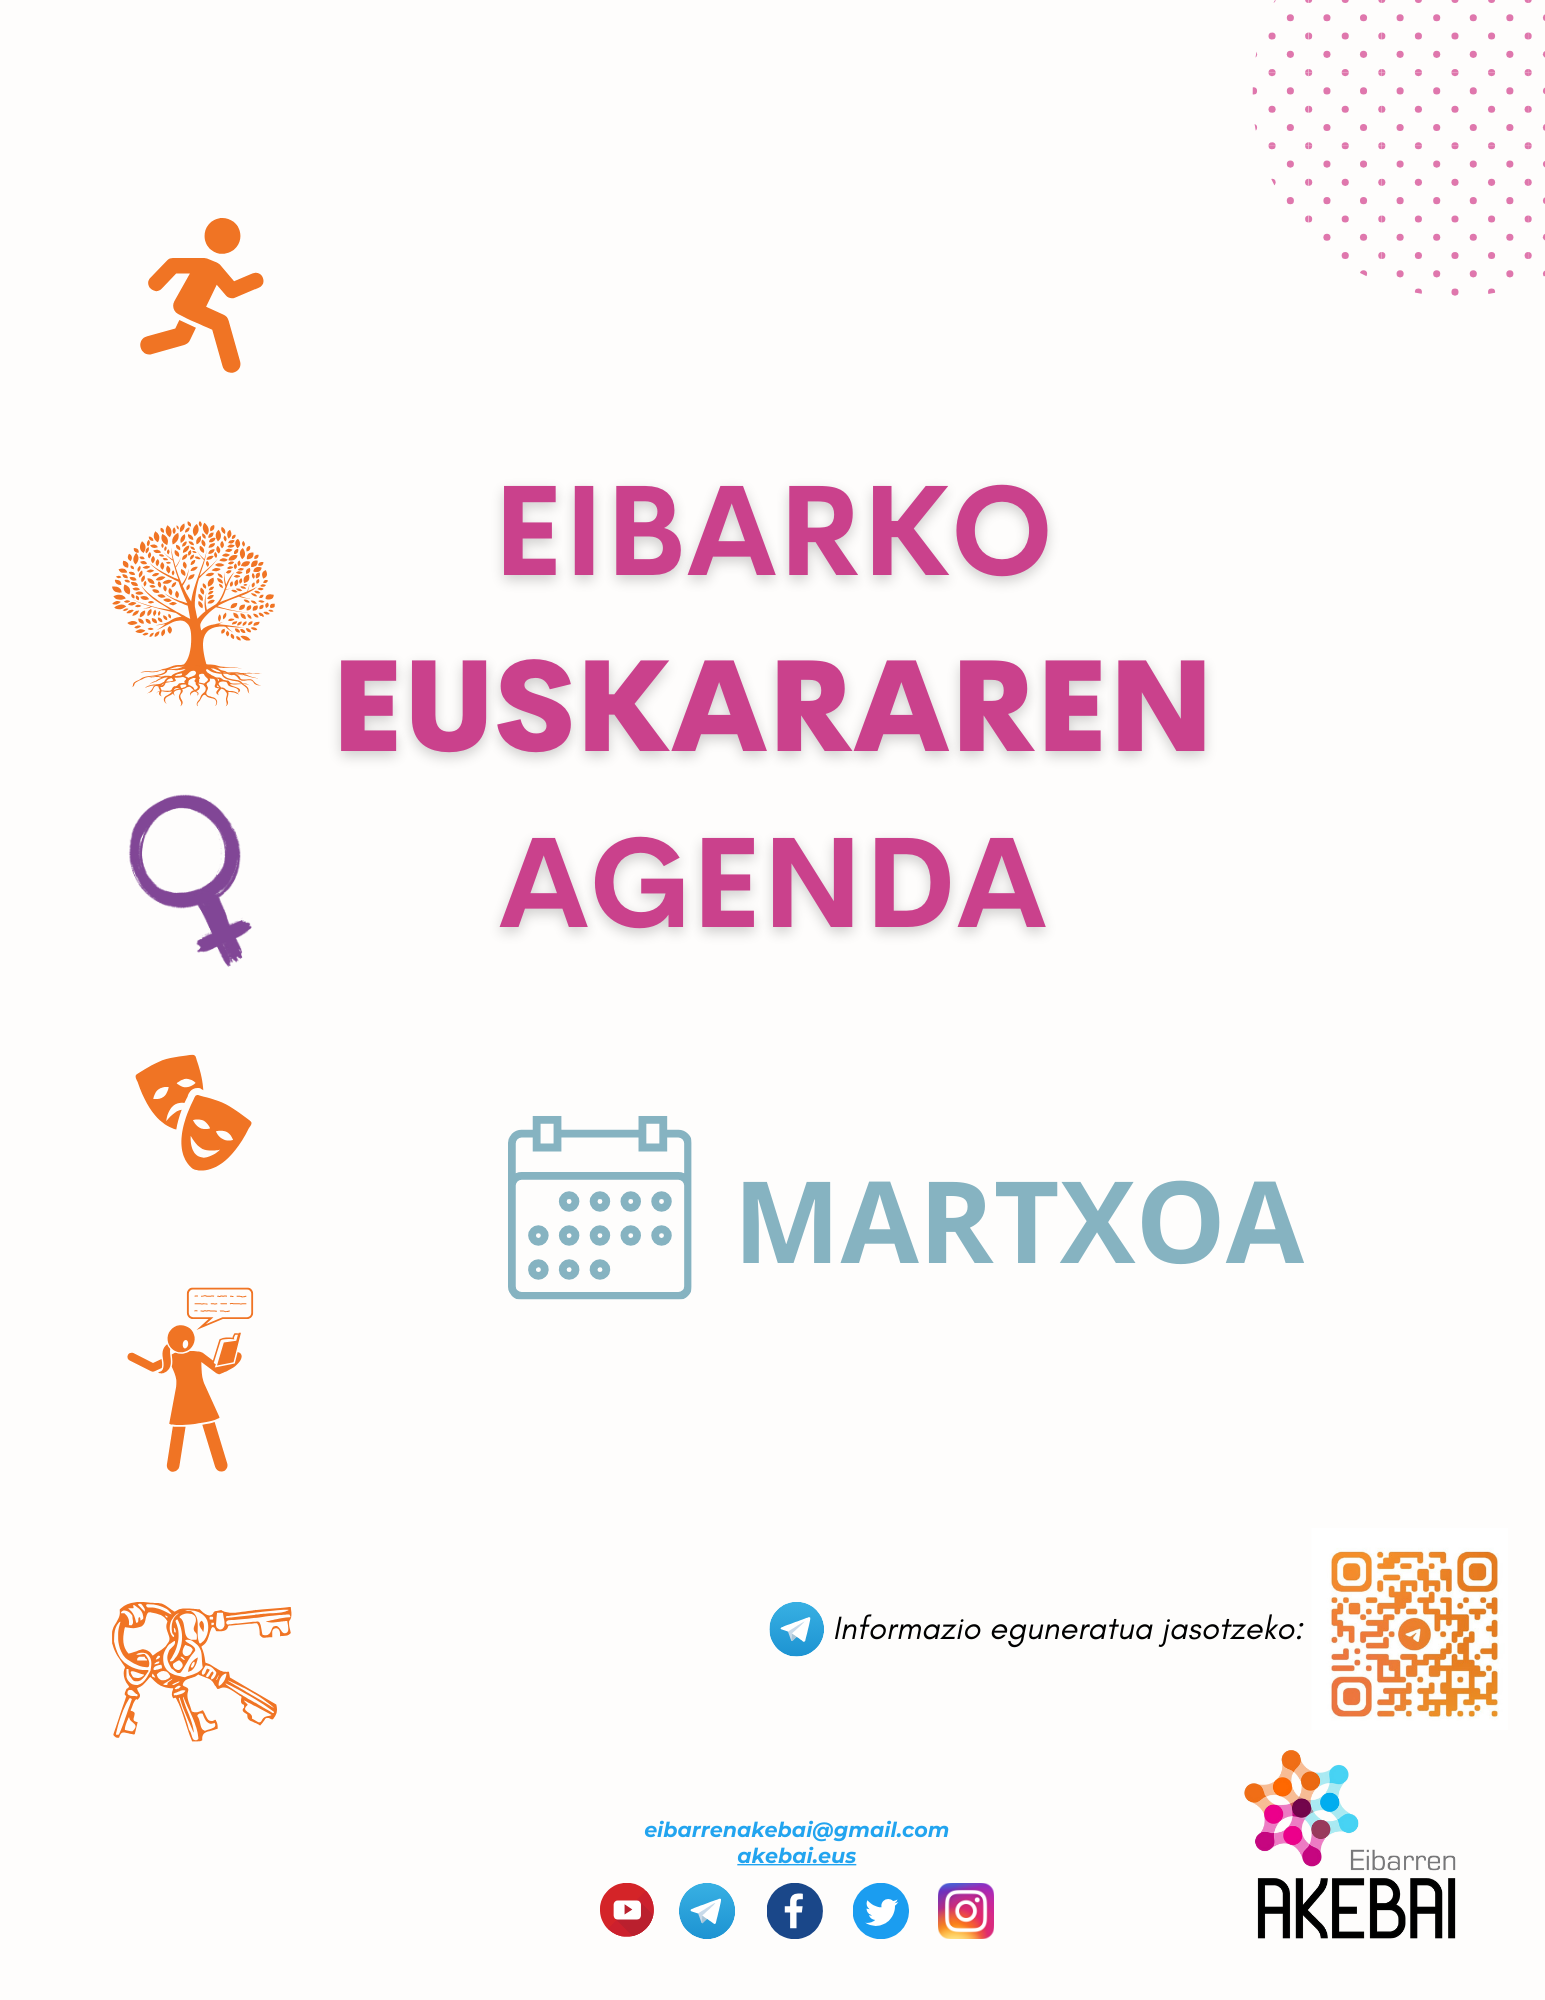 Eibarko euskararen agenda: marzo